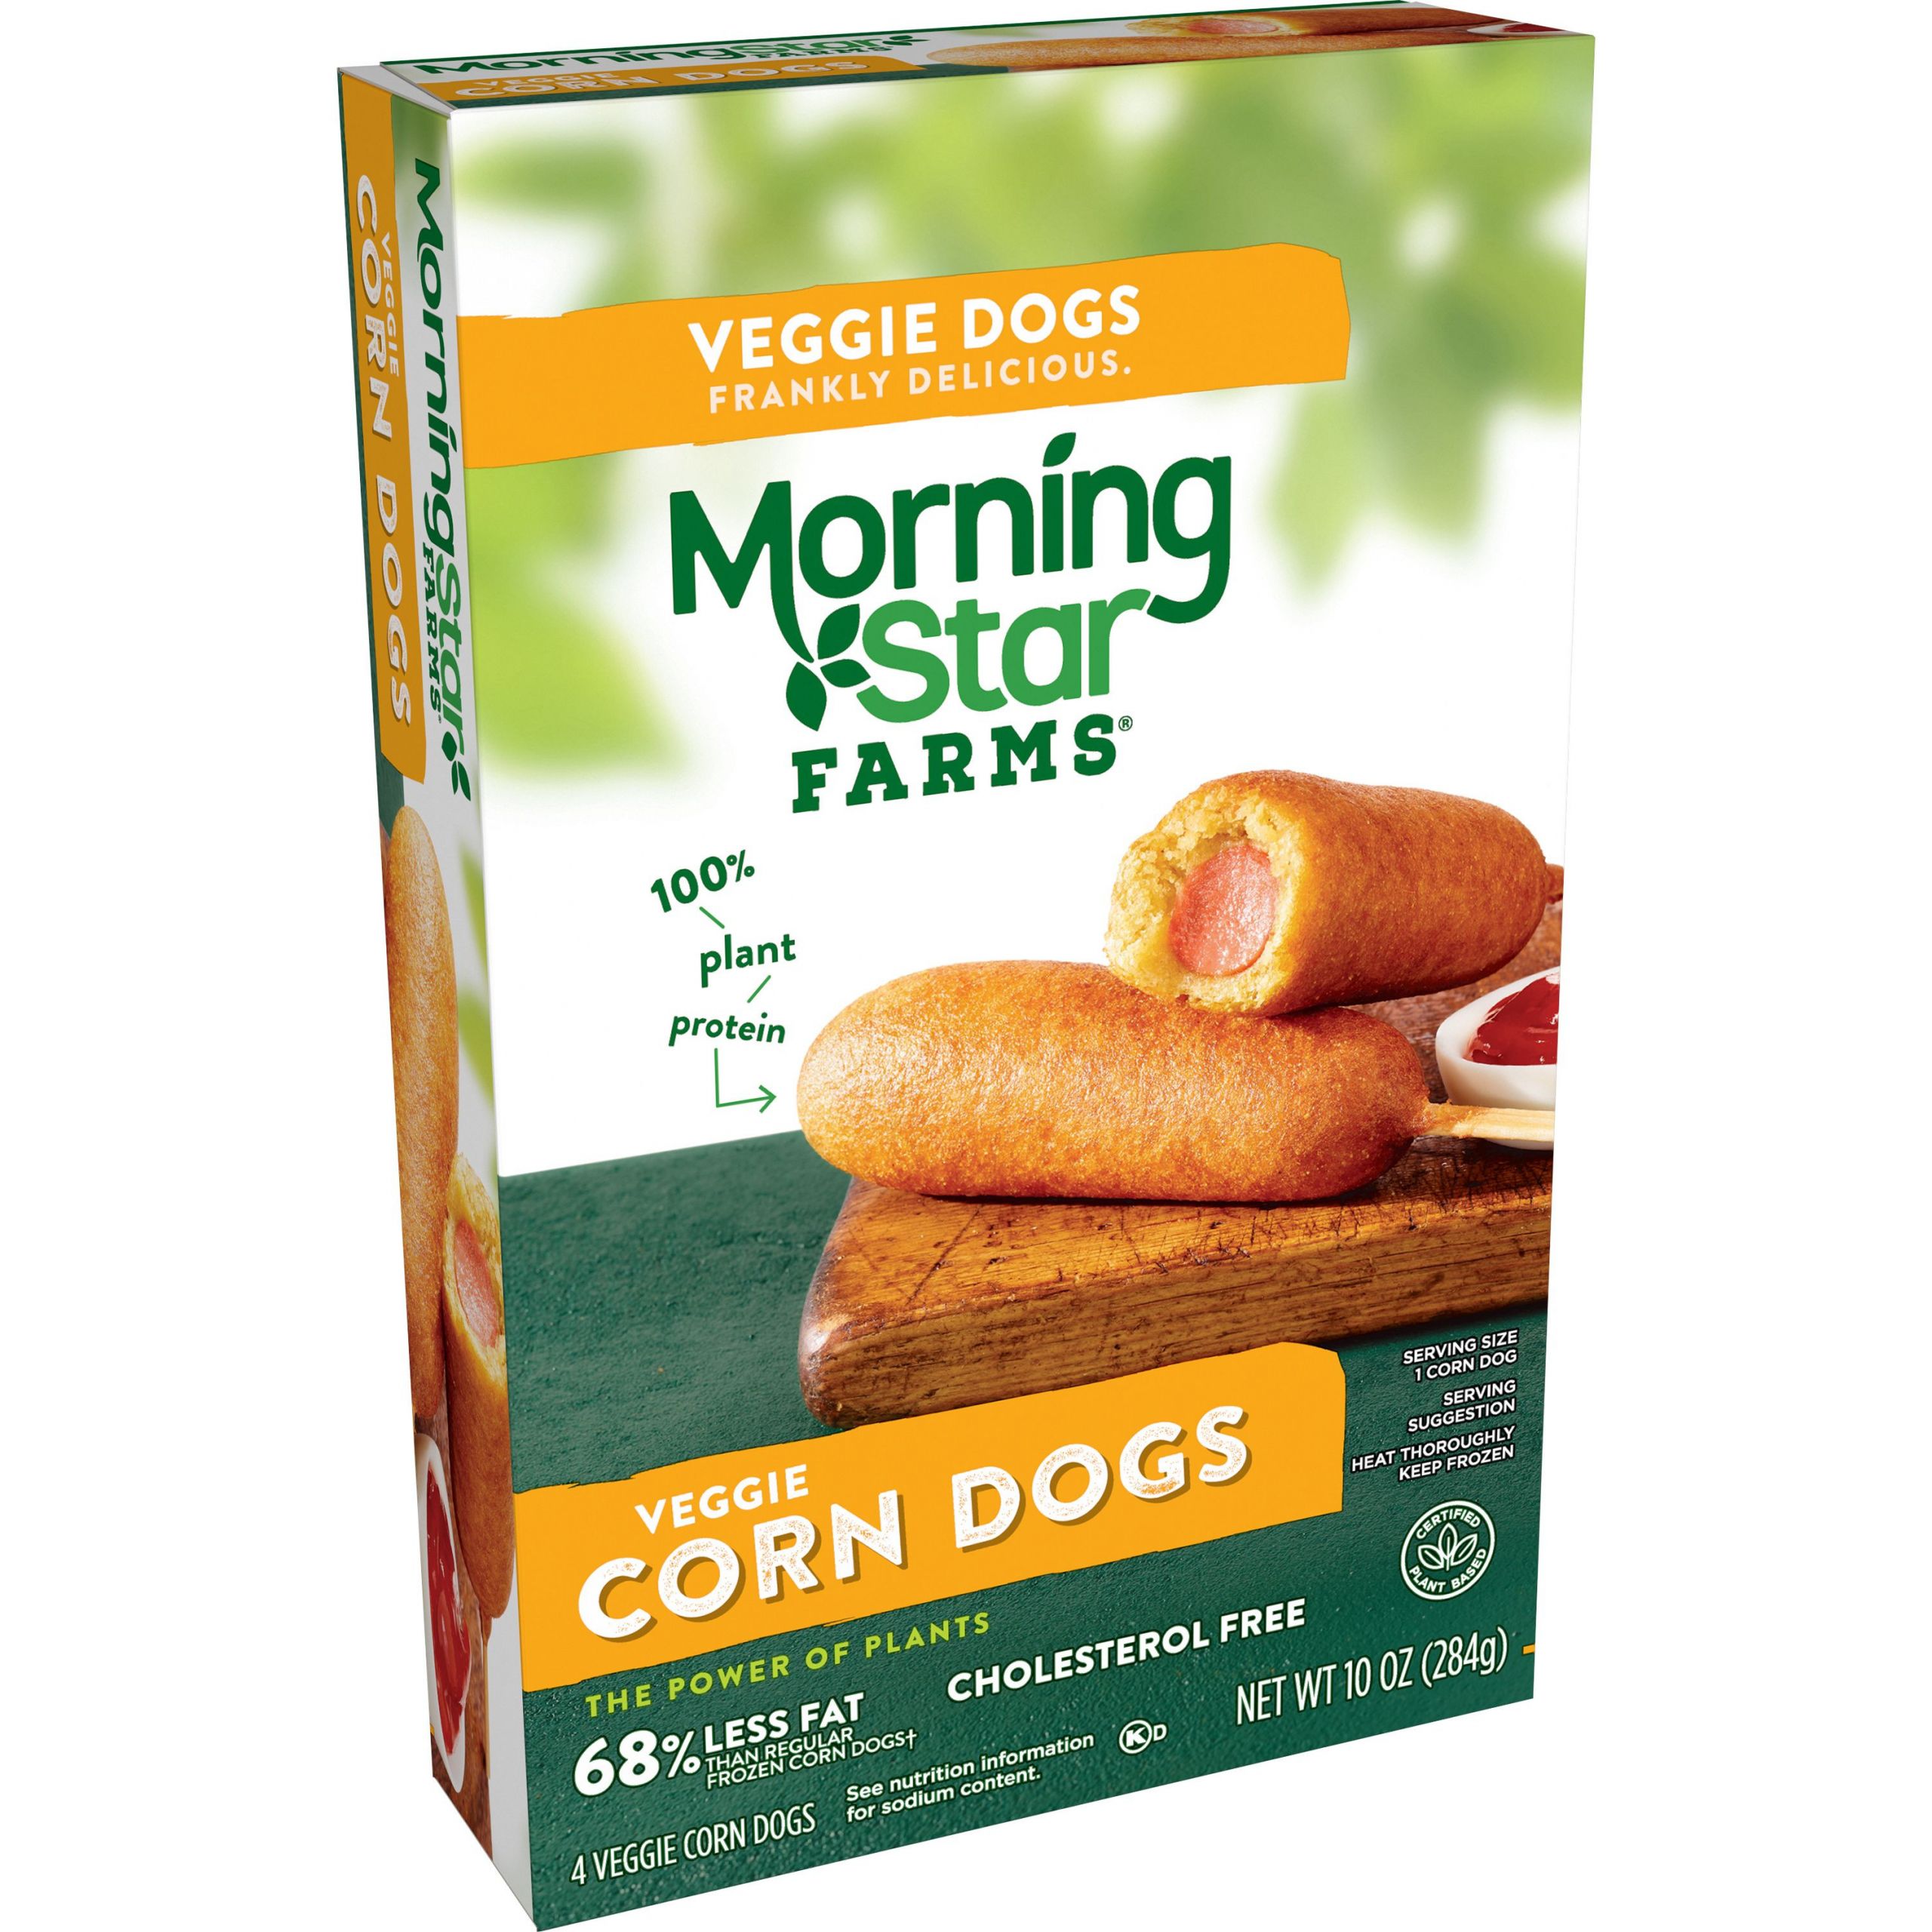 Vegan Corn Dogs Best Of Morningstar Farms Veggie Corn Dogs original Vegan 10oz